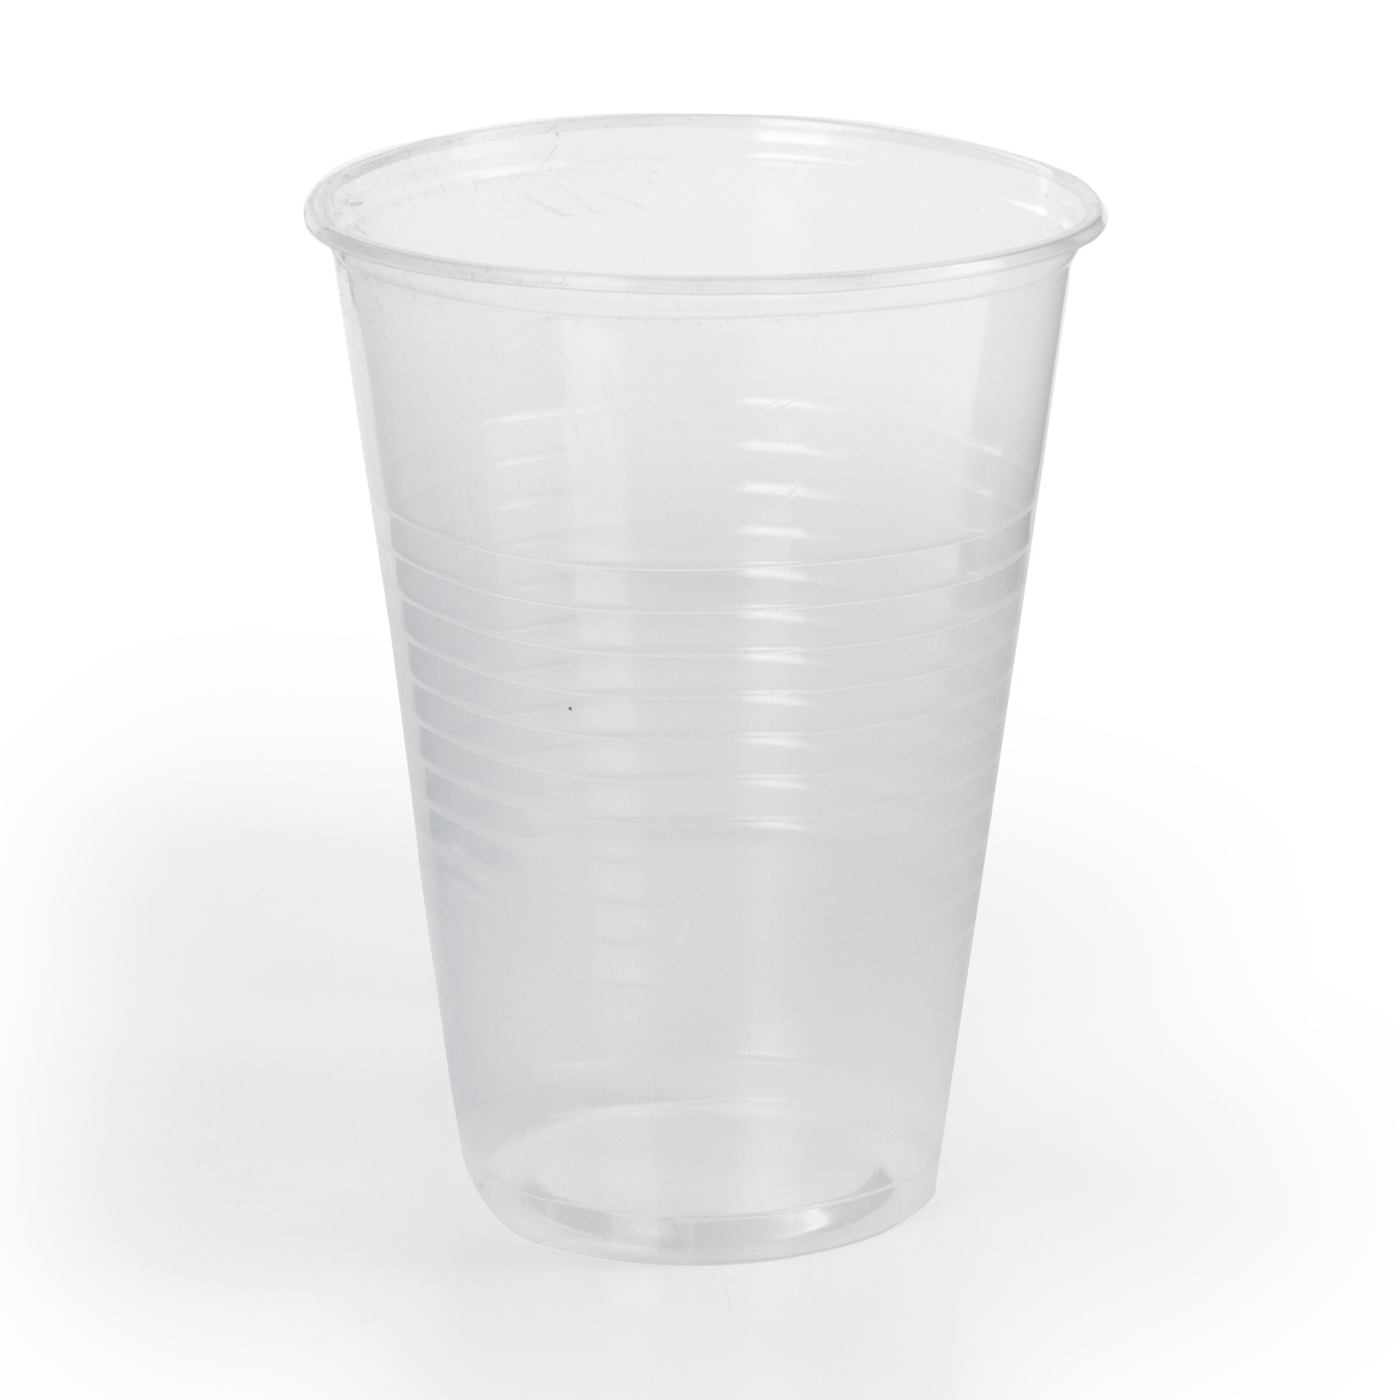 Характеристики Одноразовые пластиковые стаканы/стаканчики 200 мл .